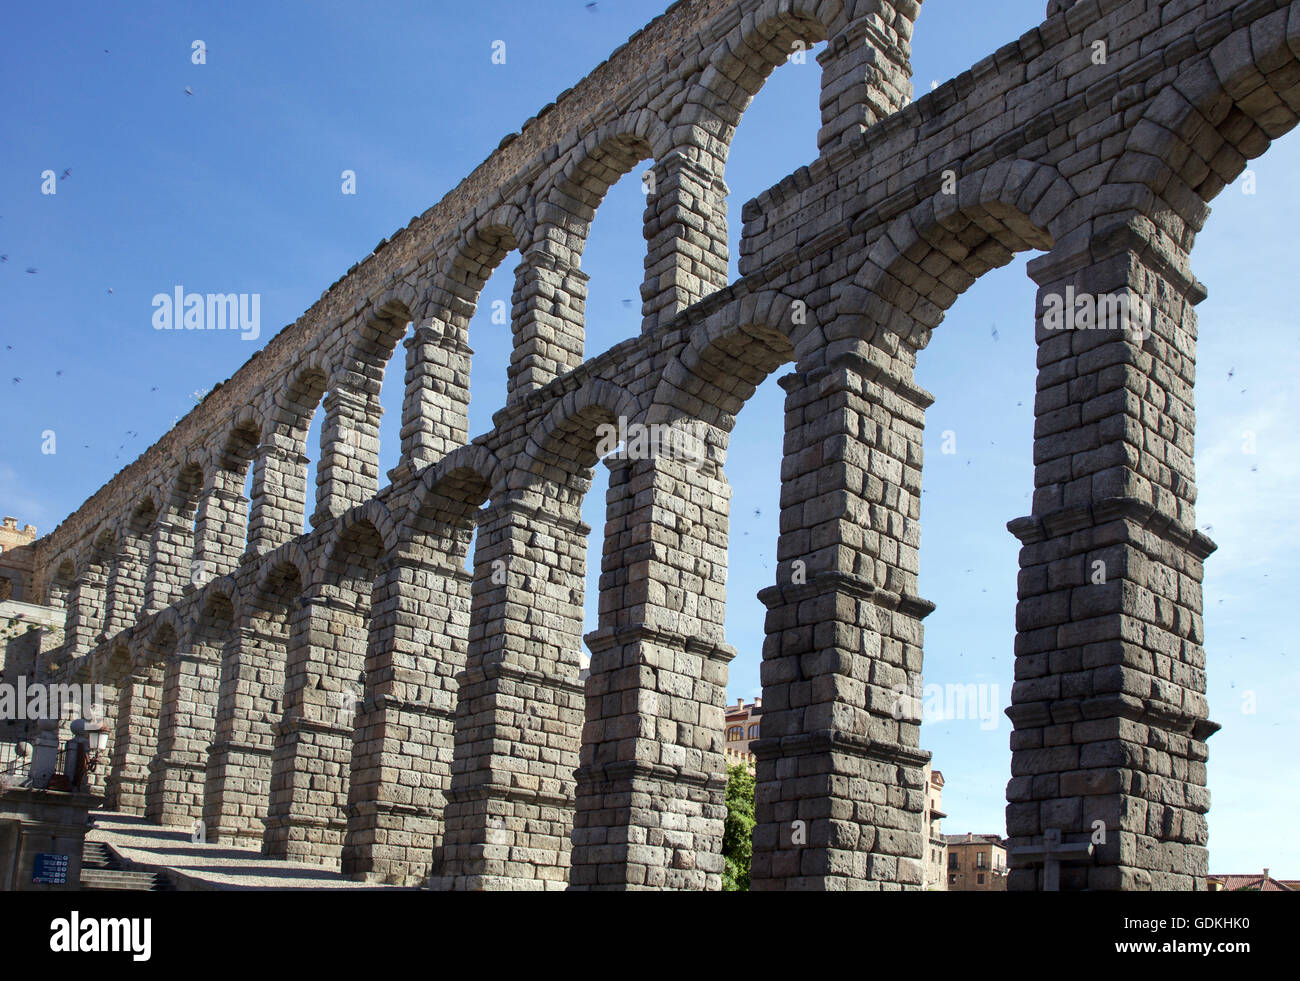 Roman Aqueduct in Segovia Stock Photo